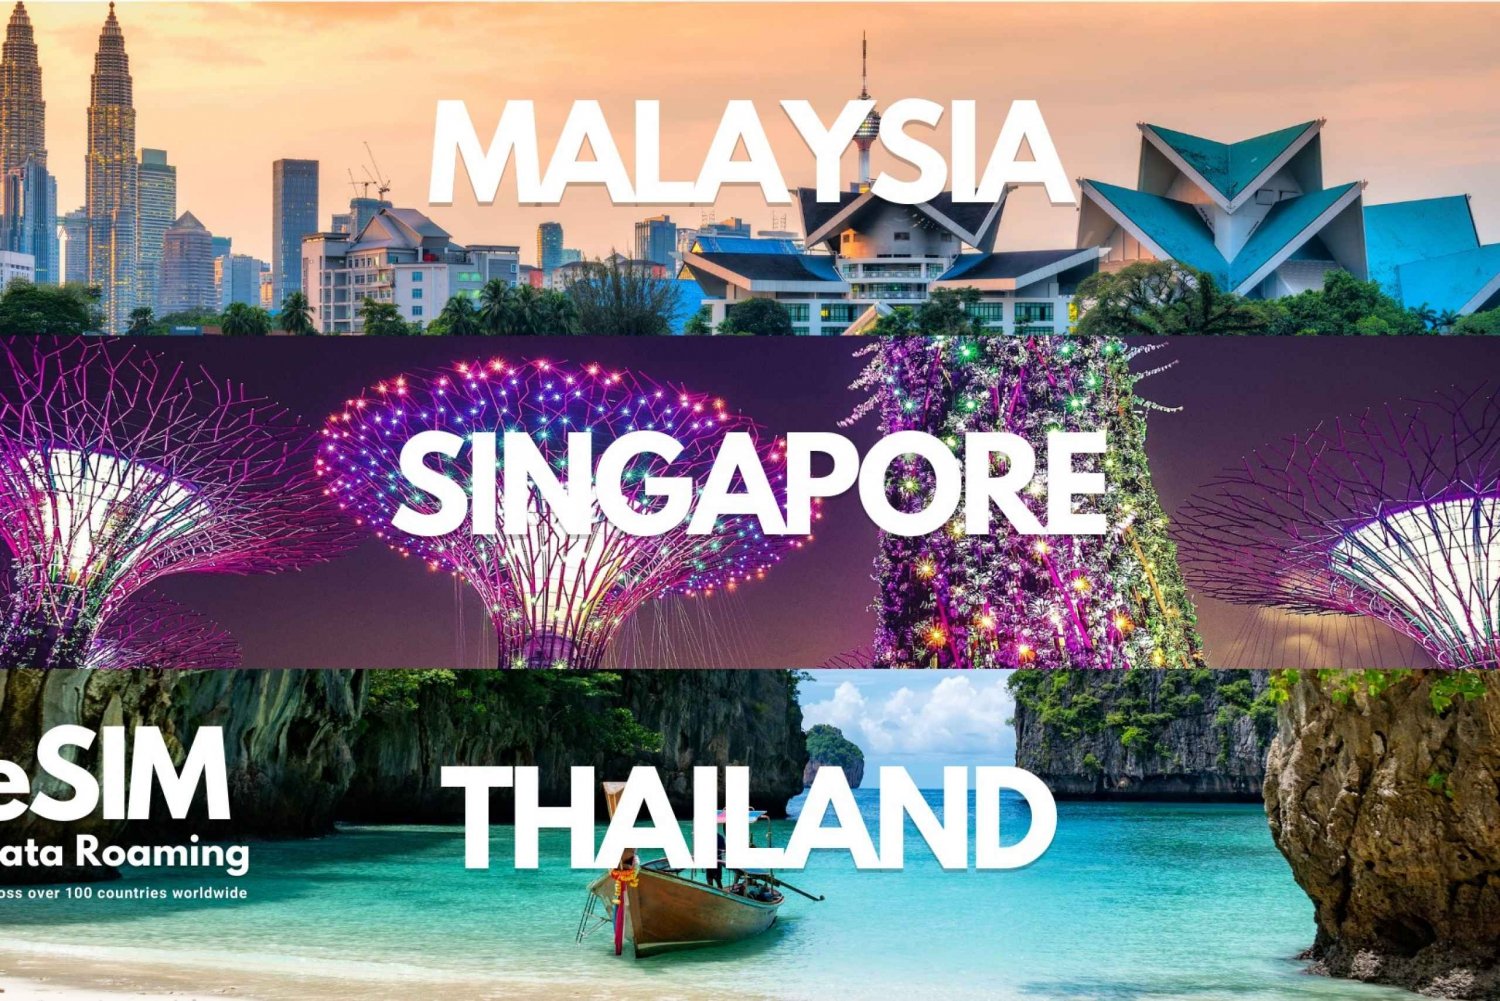 Singapour, Thaïlande et Malaisie : Données mobiles illimitées eSIM